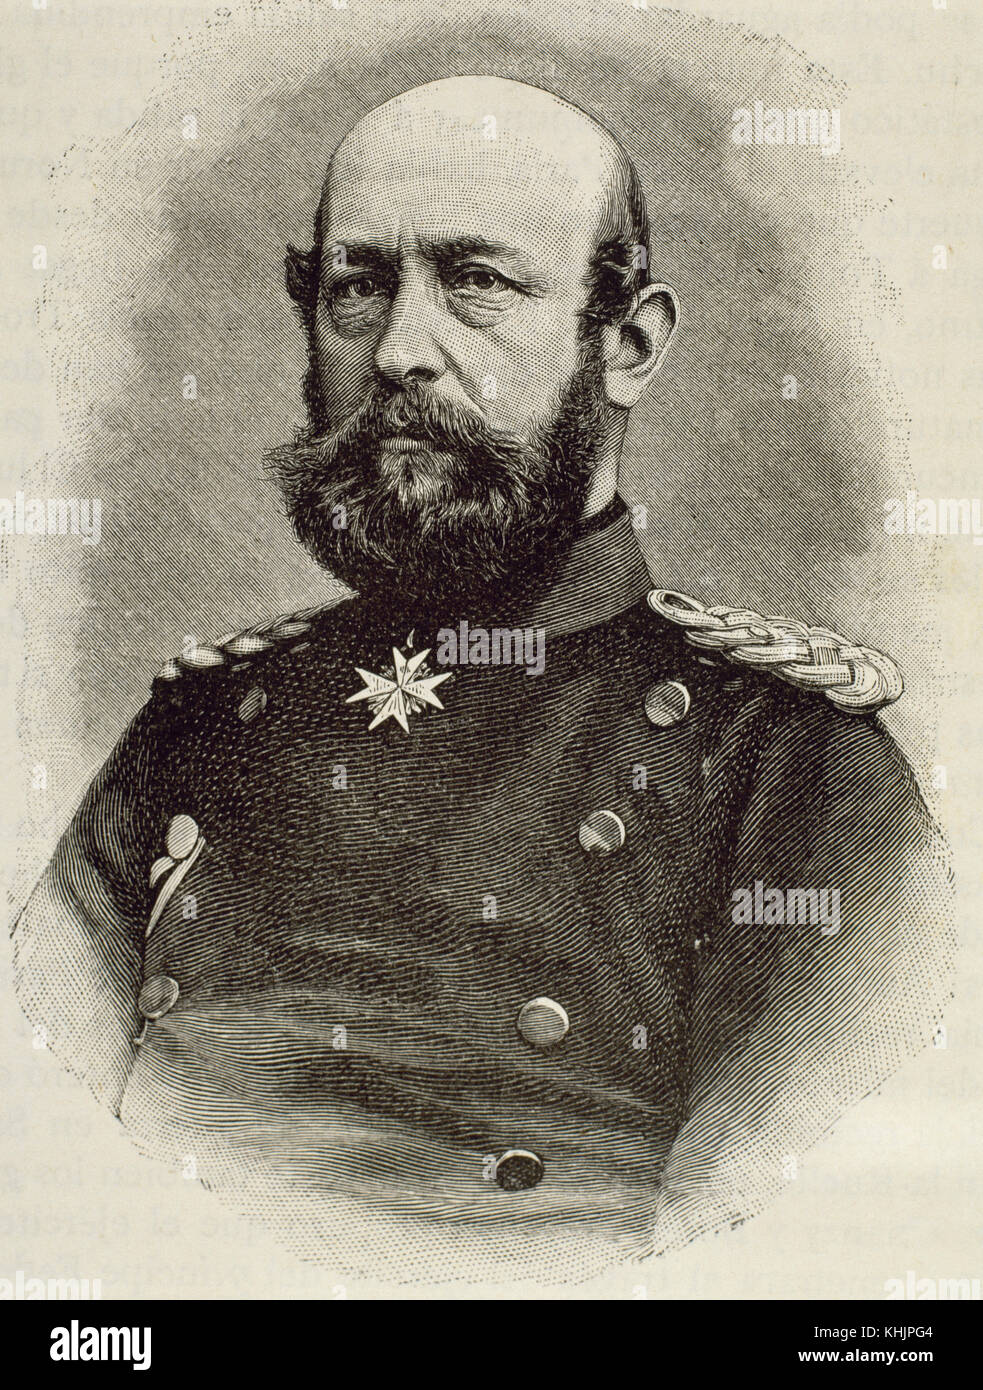 Federico Francisco II (1823-1883) oficial de Prusia y gran duque de Mecklemburgo-Schwerin (1842-1883). retrato. grabado. Foto de stock